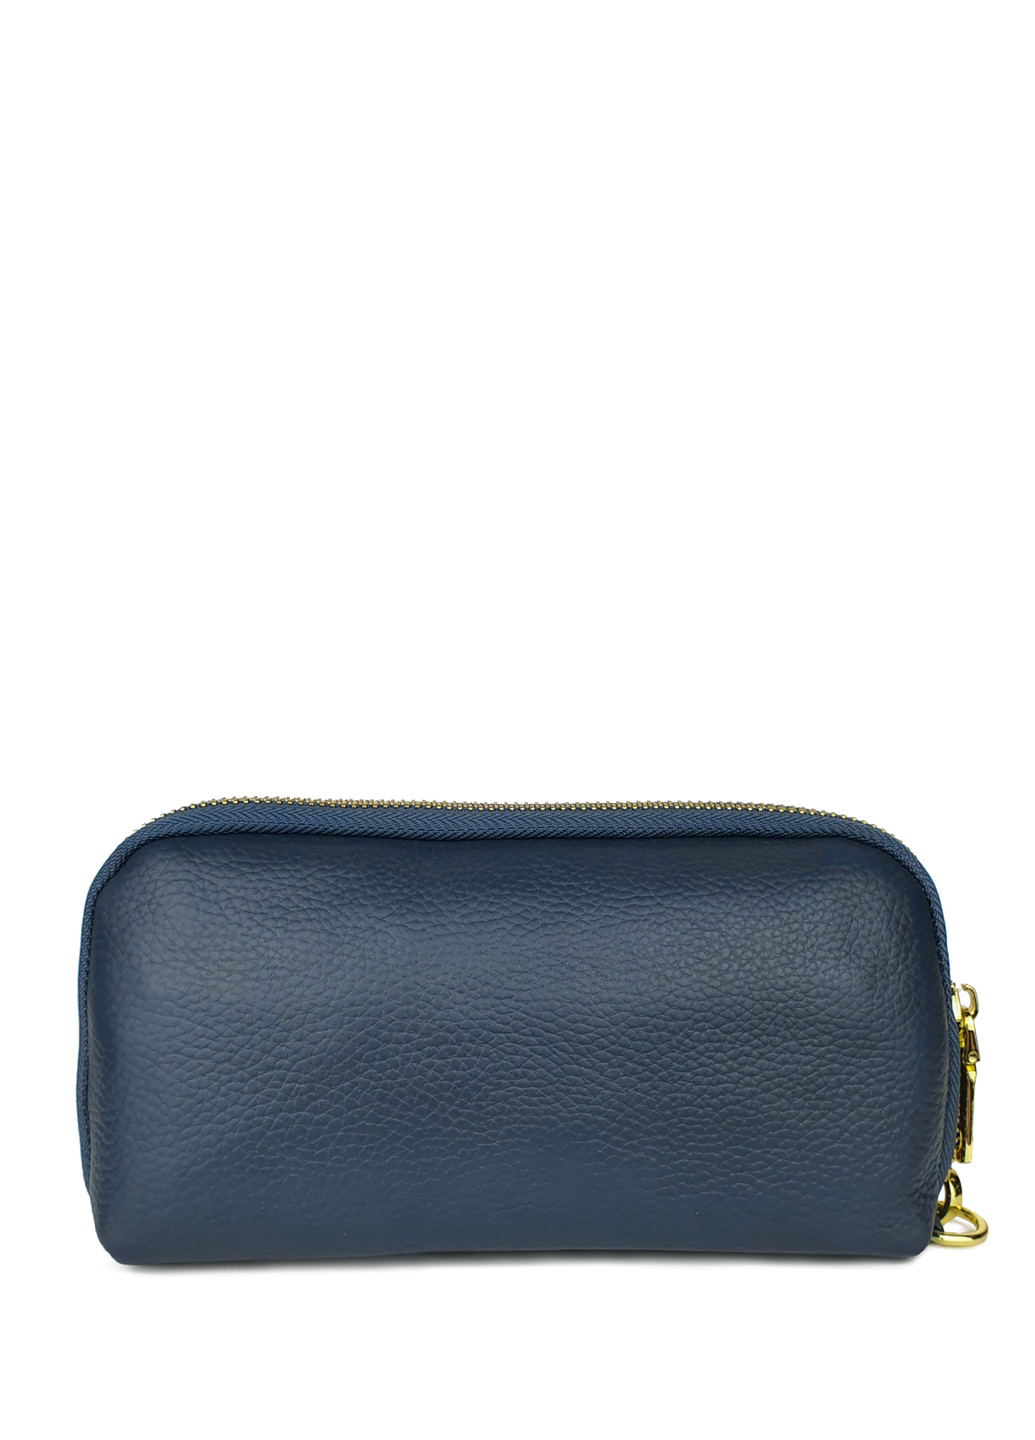 Женский кошелек портмоне большой синий кожаный 21*11*5 Fashion (252033299)